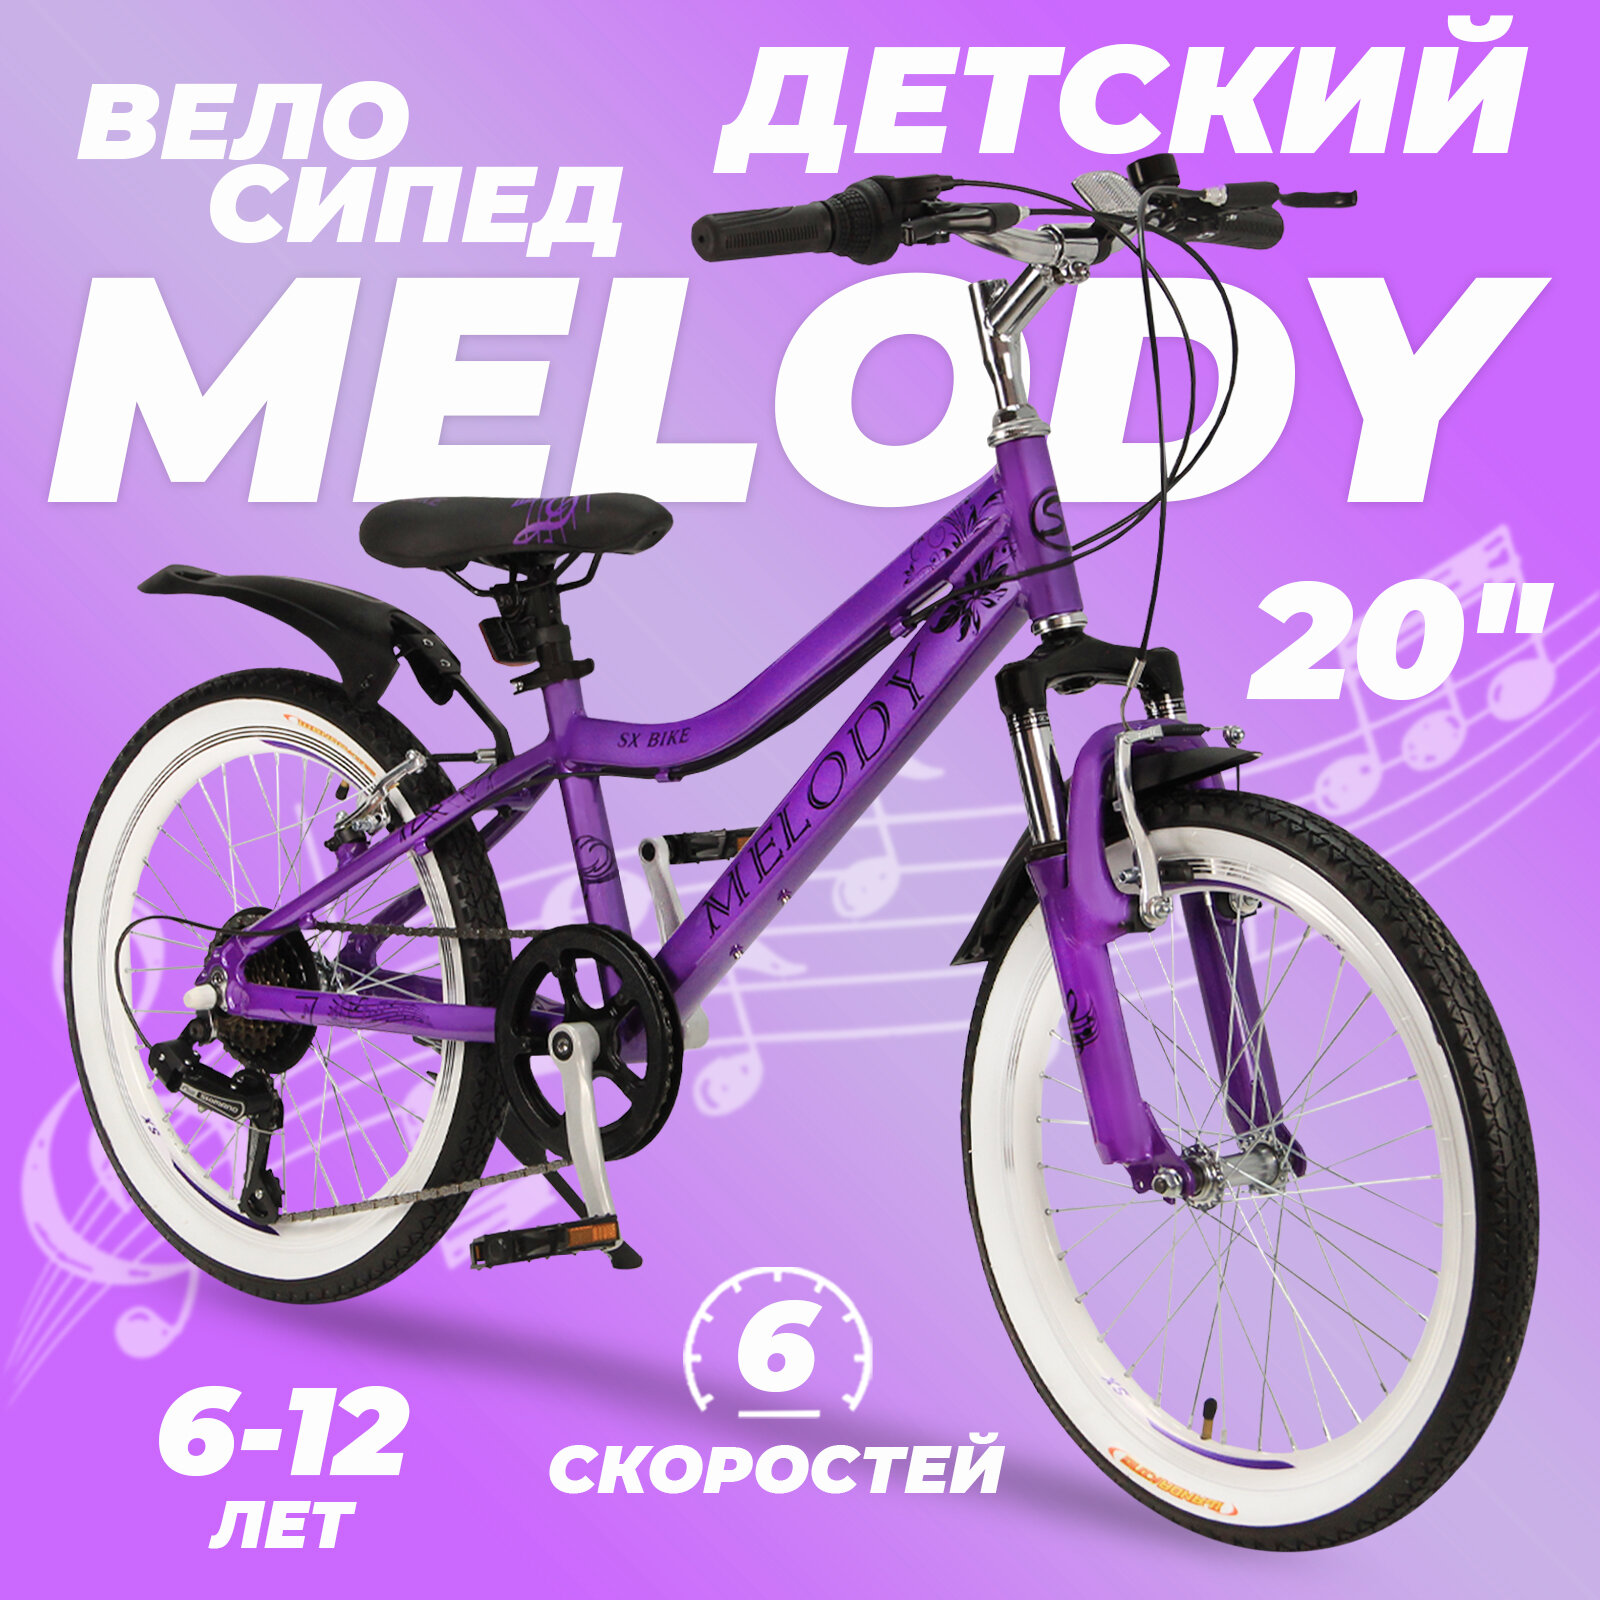 Горный велосипед детский скоростной Melody 20" фиолетовый, 6-12 лет, 6 скоростей (Shimano tourney)